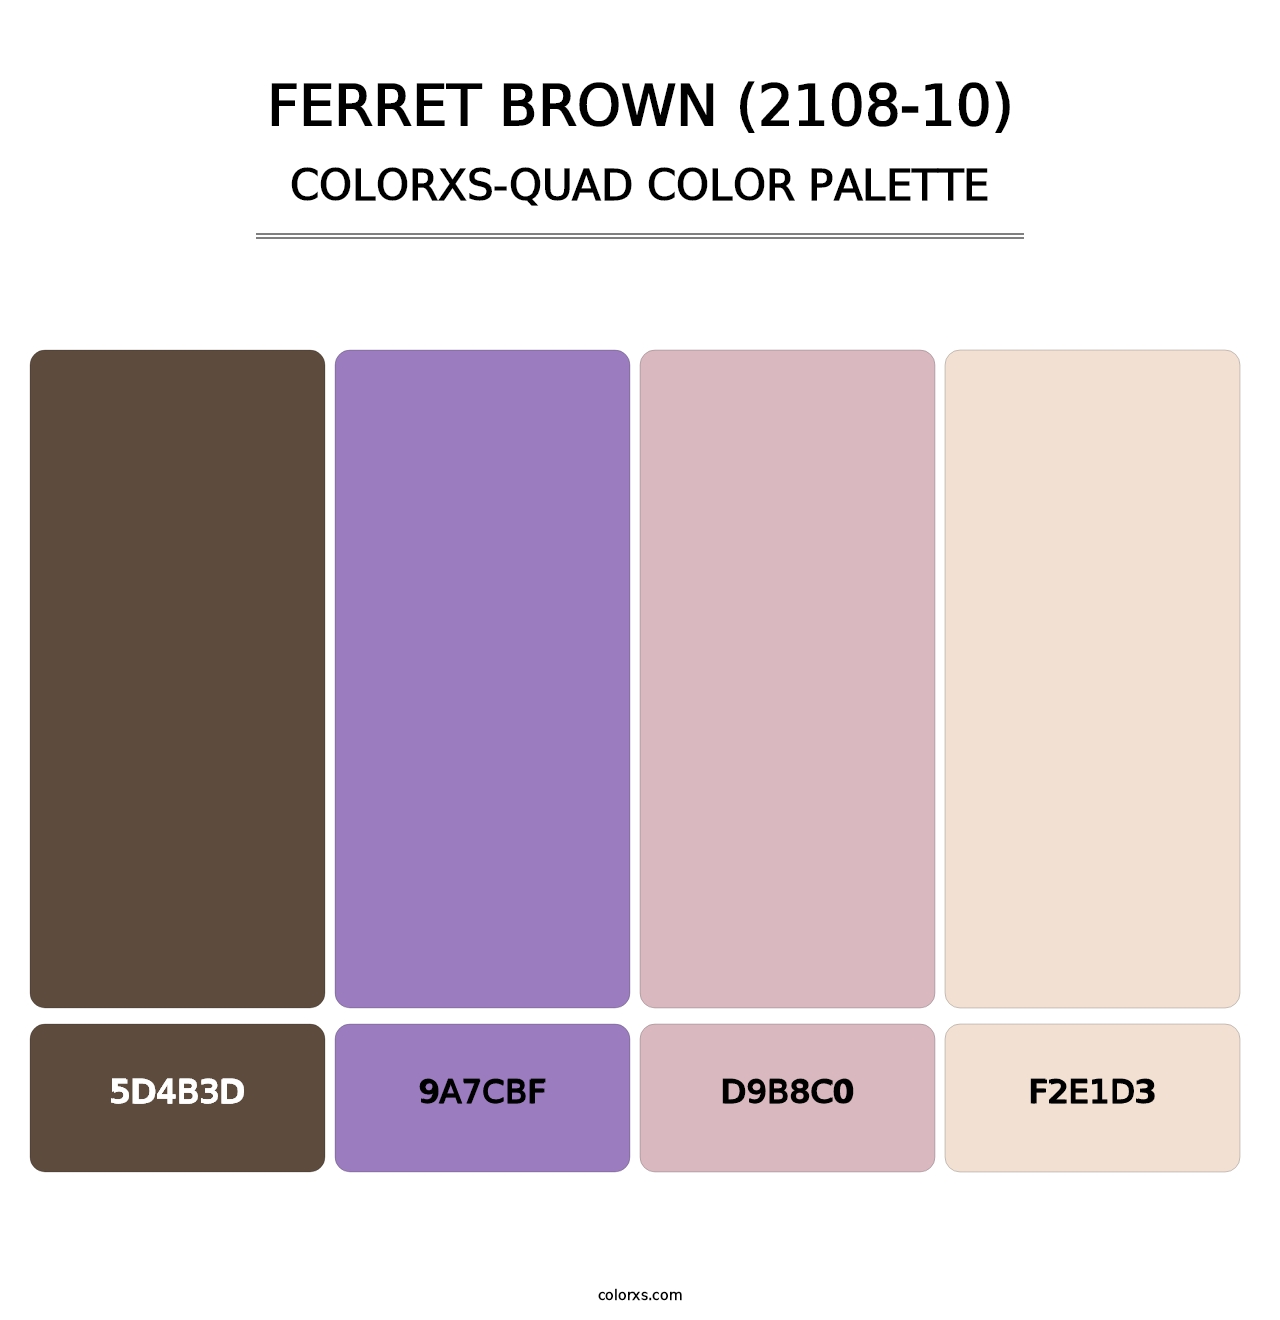 Ferret Brown (2108-10) - Colorxs Quad Palette